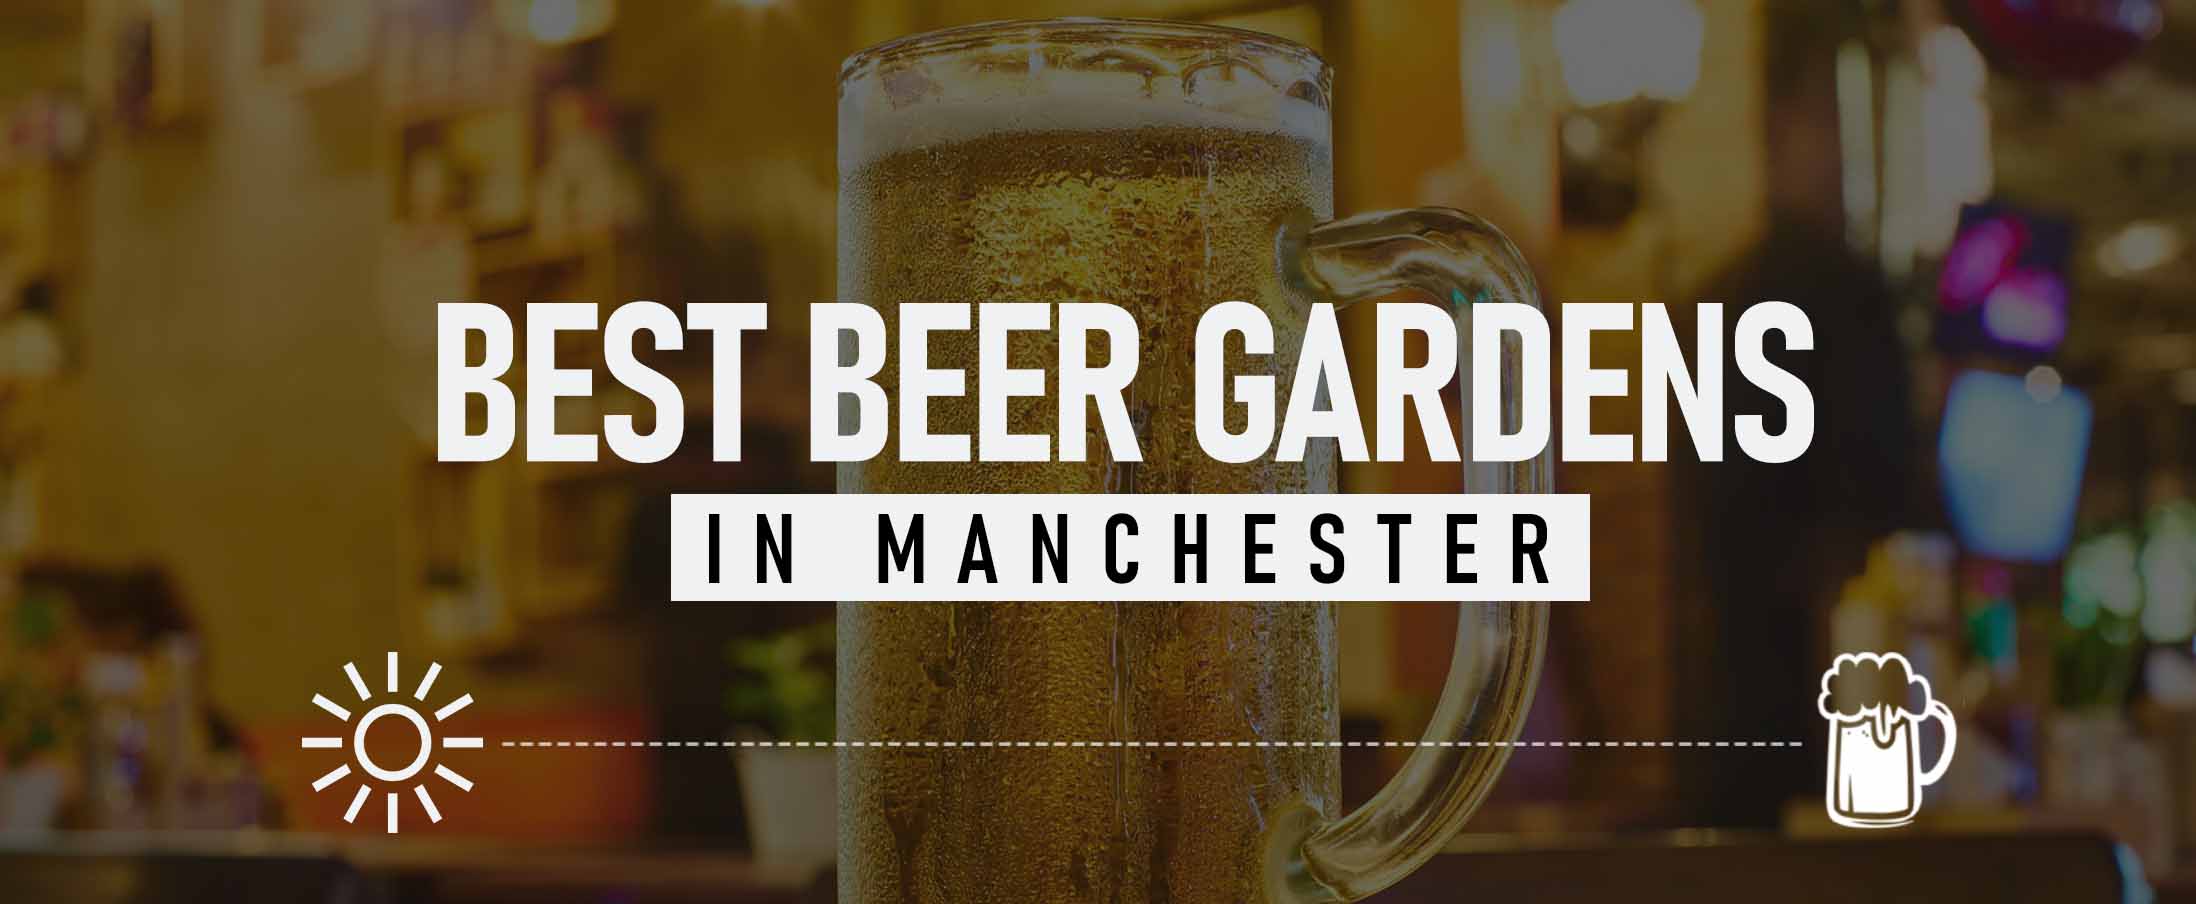 Best Beer Gardens in Manchester